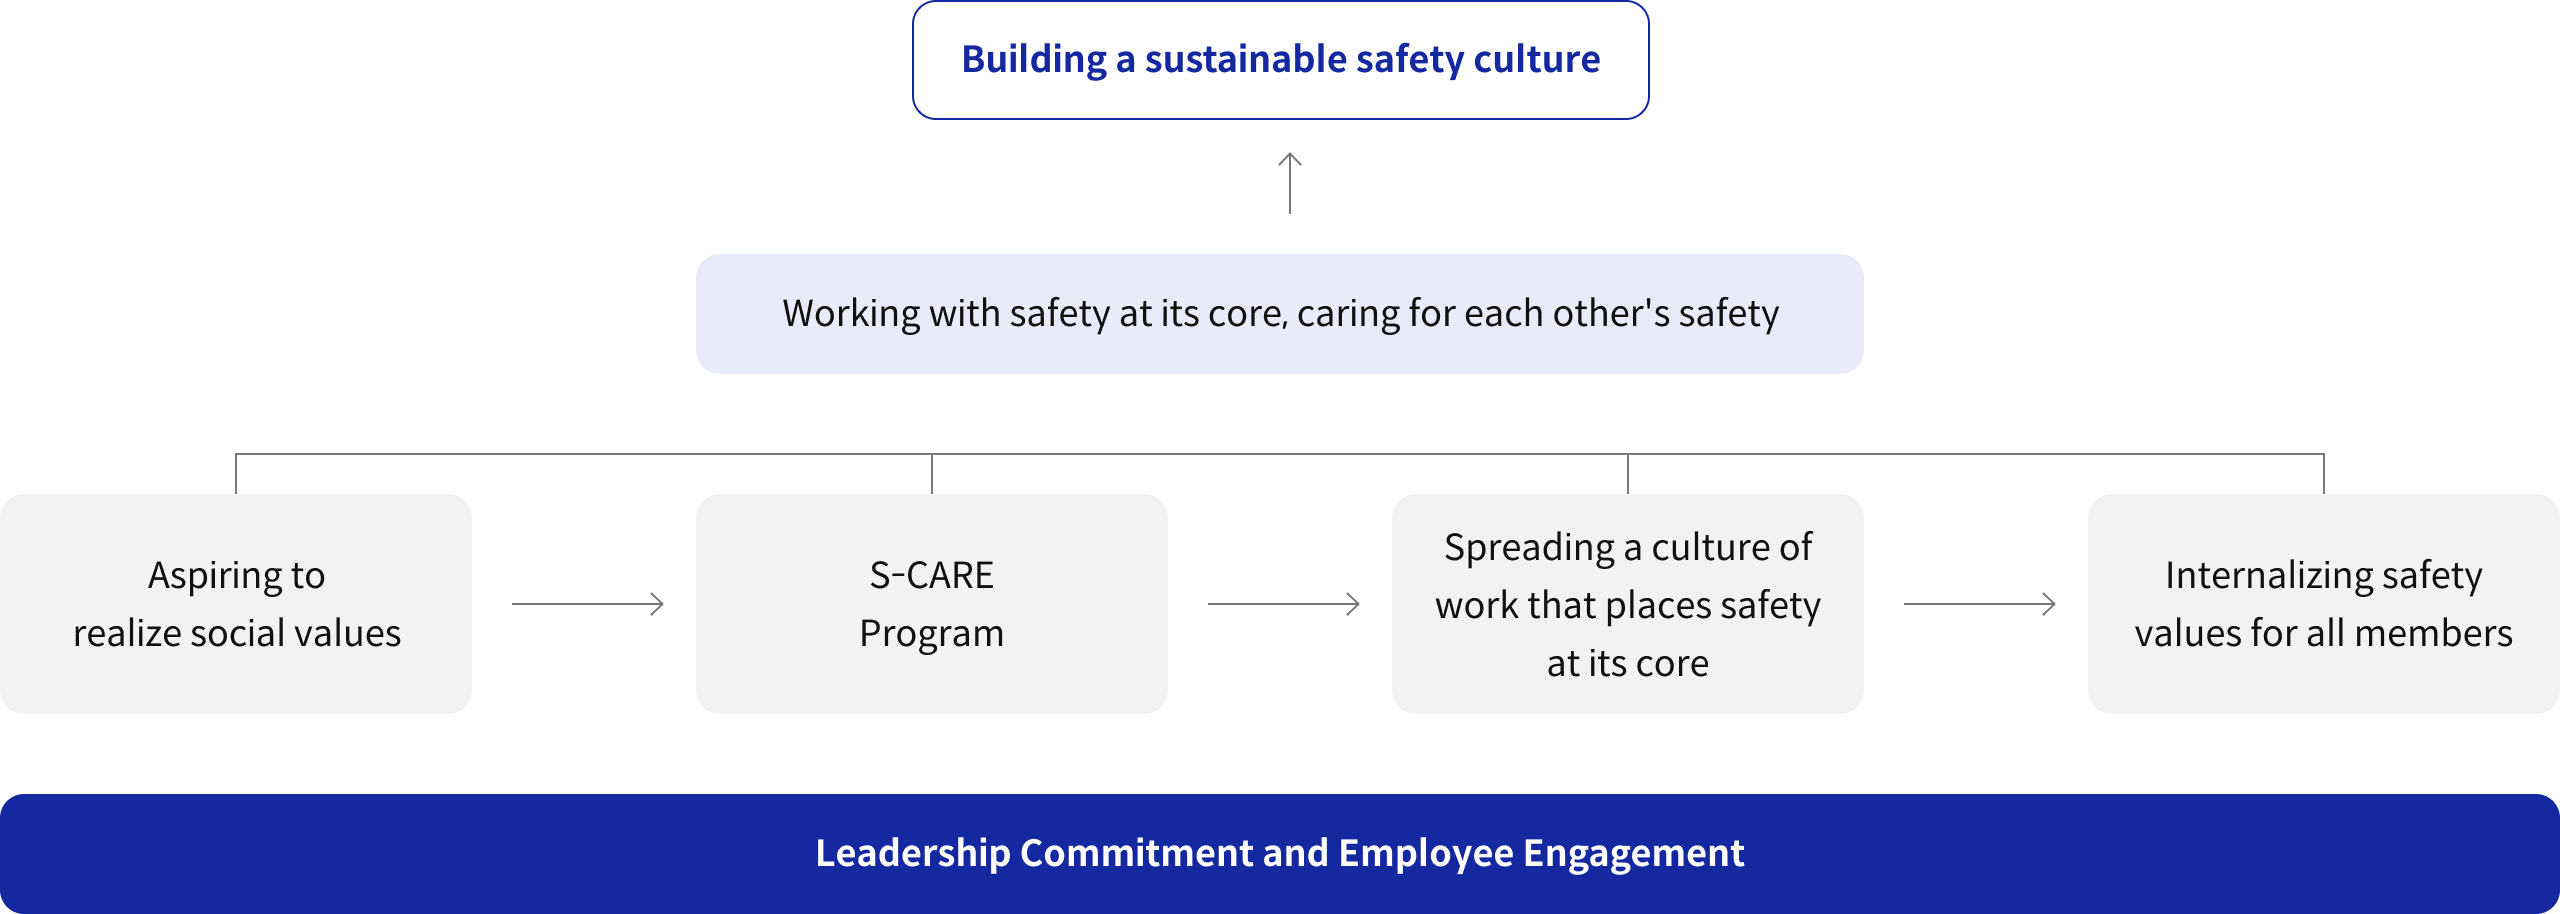 지속 가능한 안전문화 구축 안전 중심으로 일하고, 서로의 안전을 챙겨주는 사회적 가치 실현에 대한 열망 S - CARE 프로그램 안전을 중심으로 일하는 문화 확산 모든 구성원의 안전 가치 내재화 안전리더십(Leadership Commitment)과 전사적 참여(Employee Engagement)